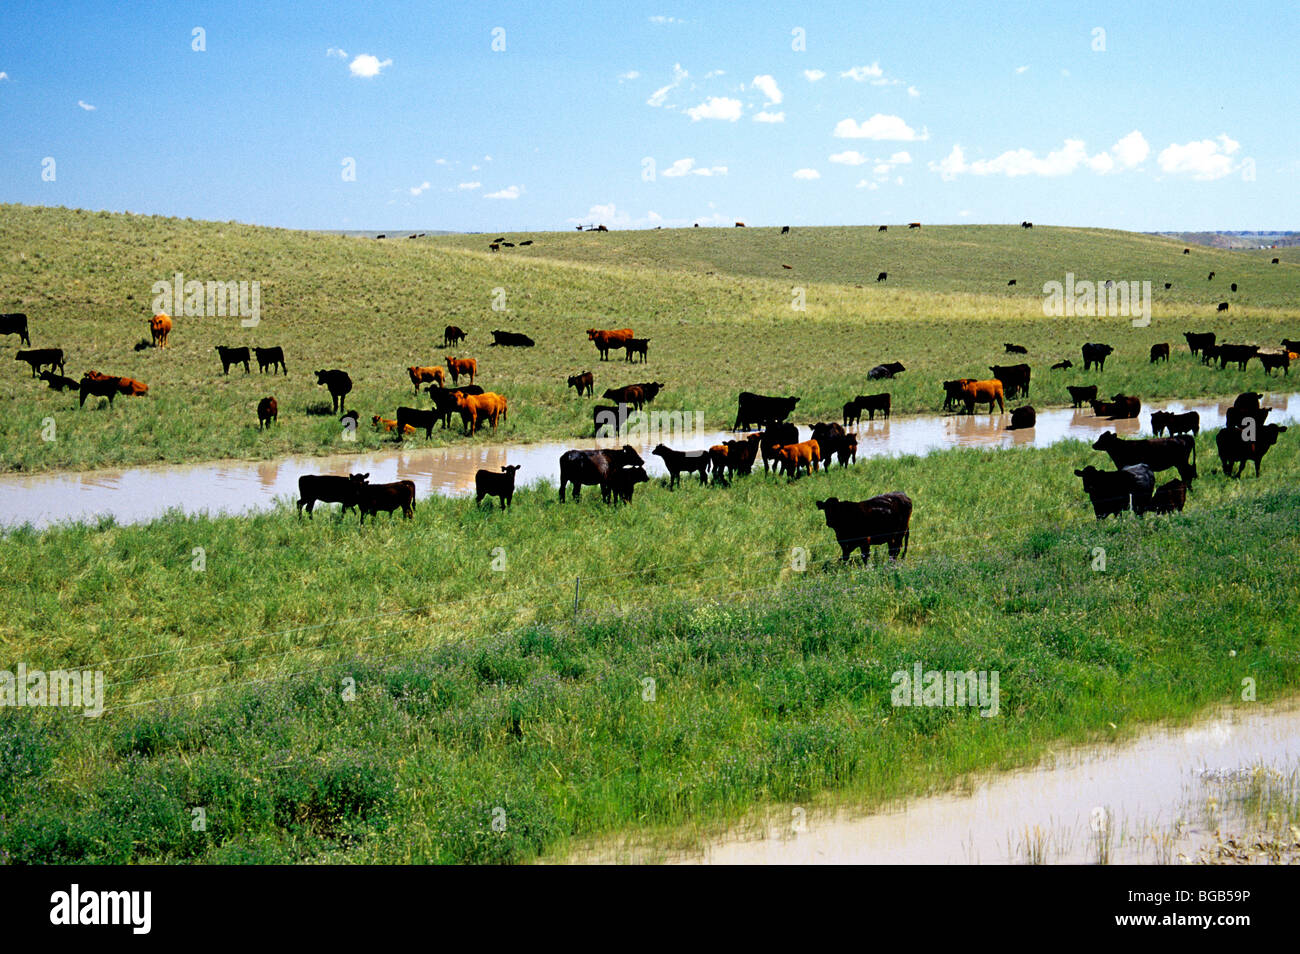 Urbar von Kohle-Tagebau, Rinder grasen auf der grünen Wiese. Stockfoto